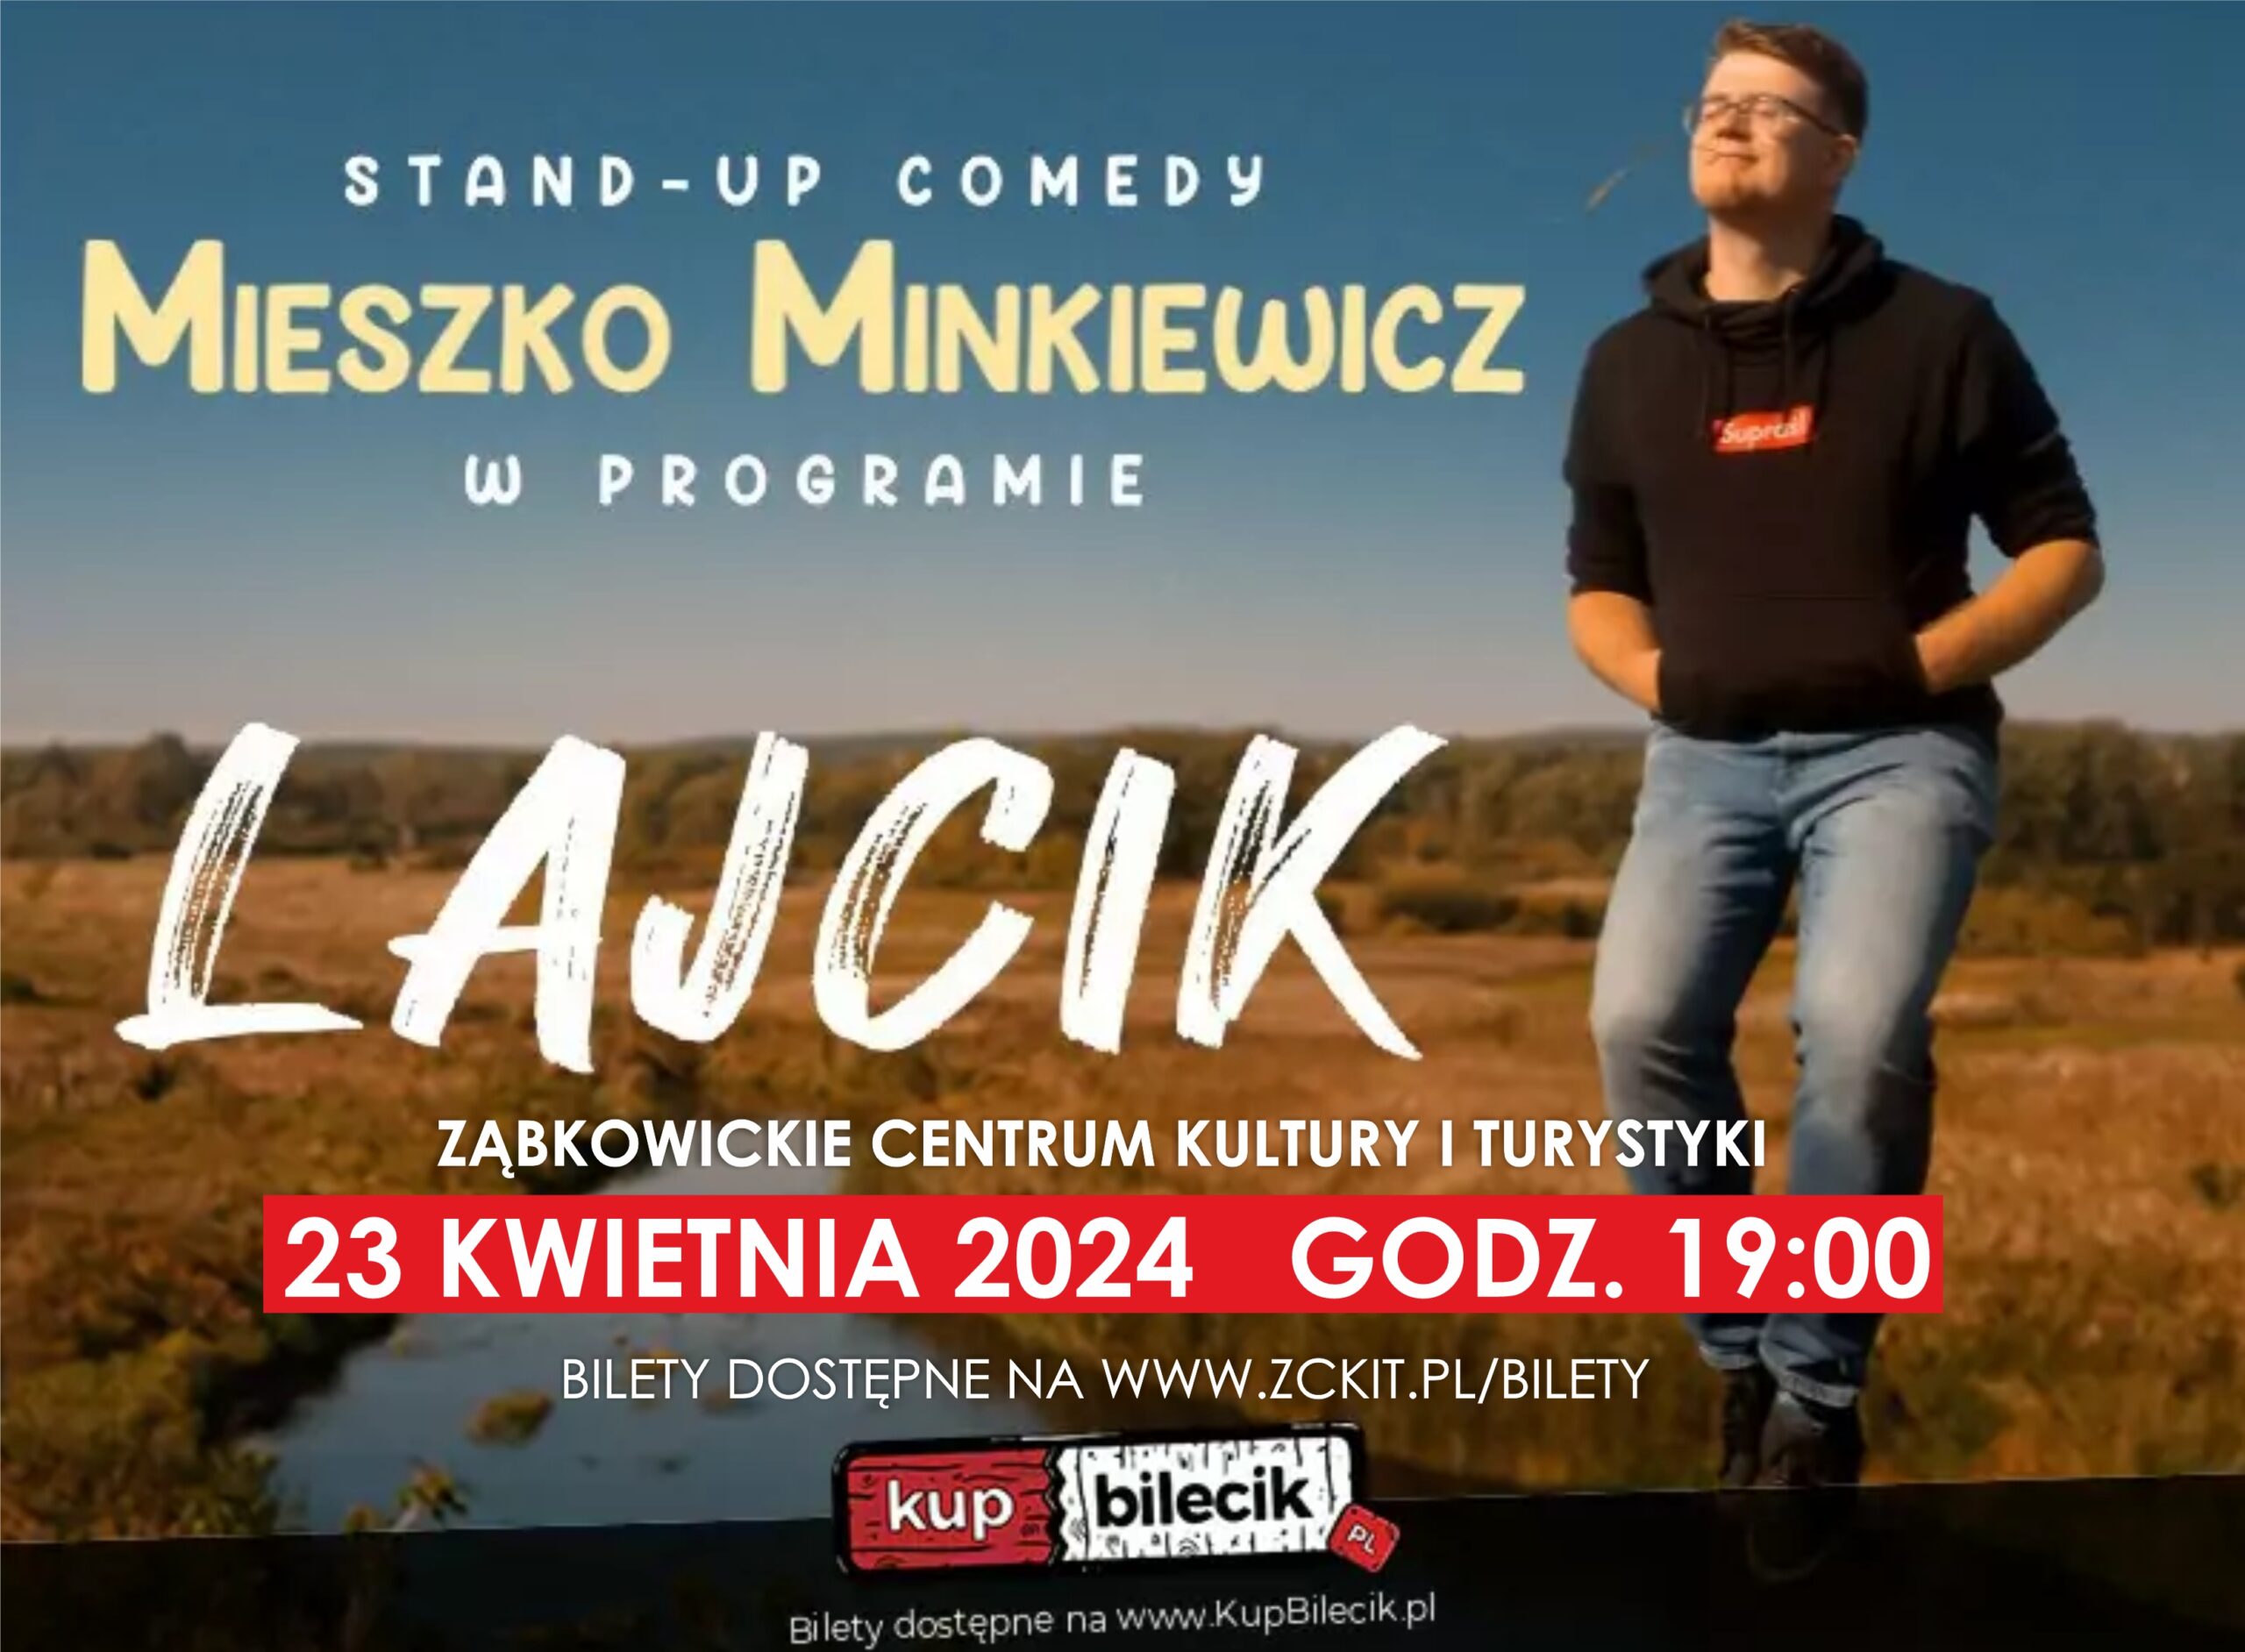 Plakat informujący o stand-upie Mieszka Minkiewicza w programie "LAJCIK", który odbędzie się 23 kwietnia 2023 o godzinie 19:00 na scenie ZCKiT.